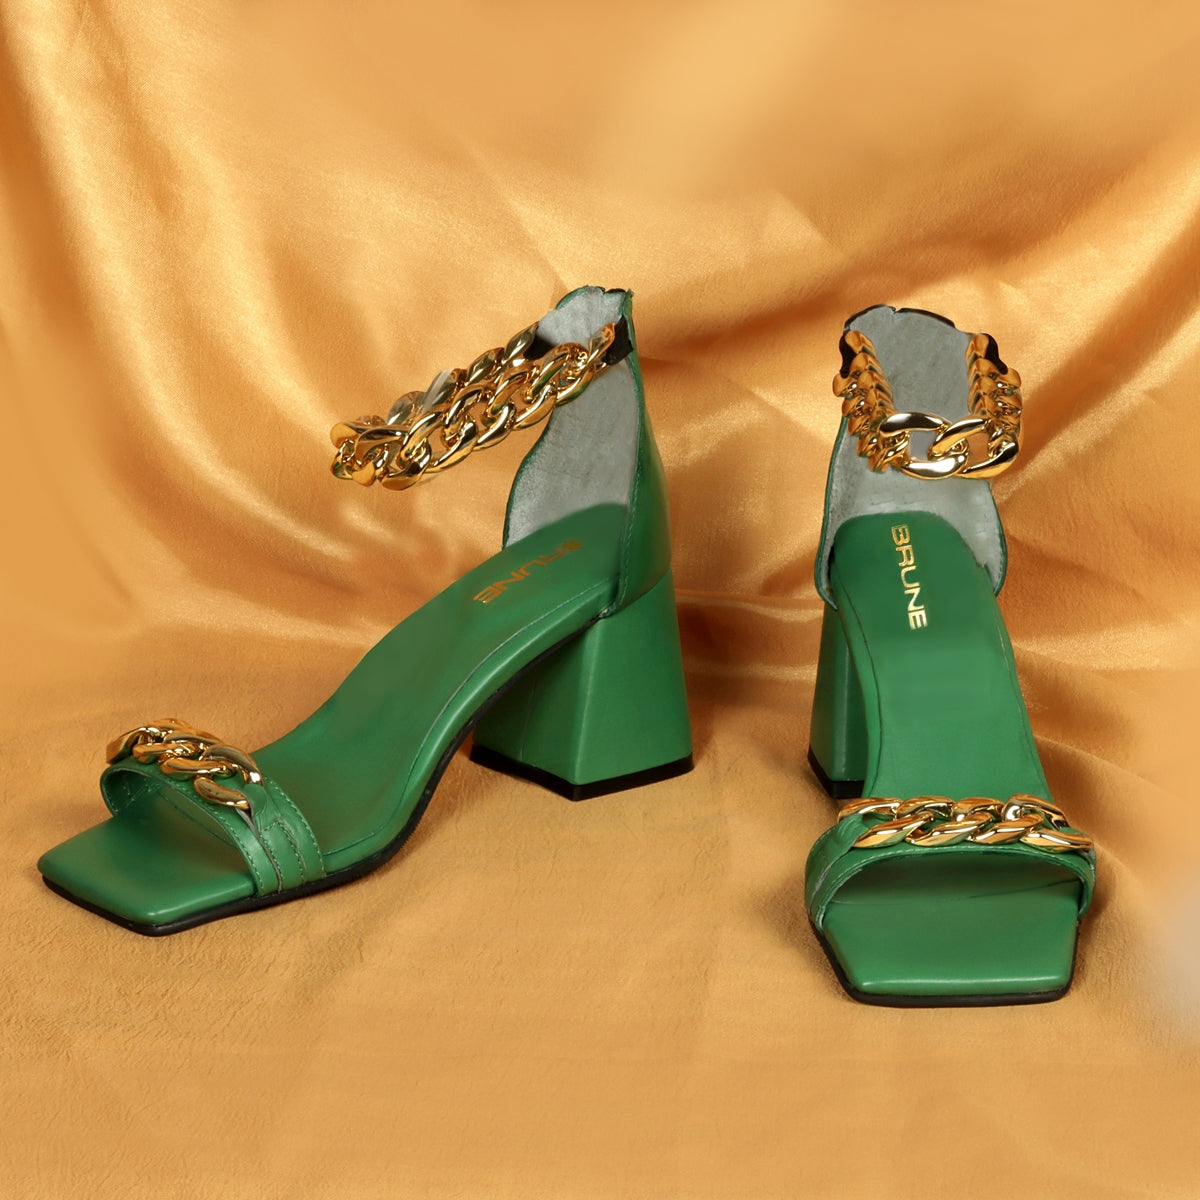 Green Blocked Heel Ladies Partywear Sandals with Golden Chain Embellis